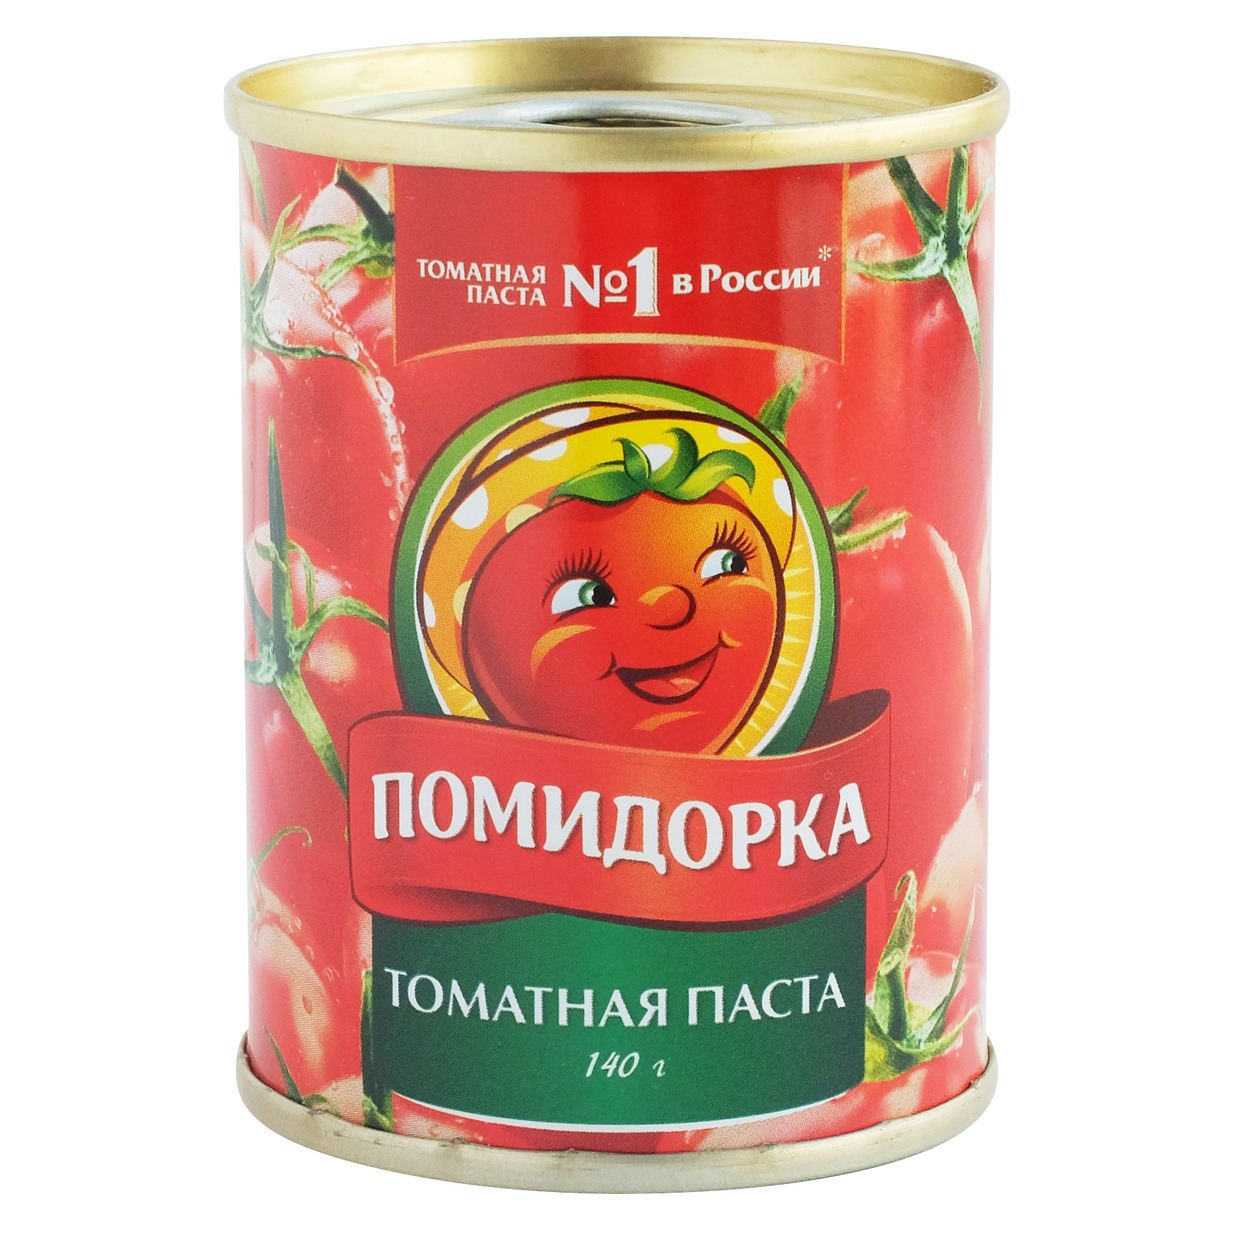 Паста Помидорка, томатная, 140 г по акции в Пятерочке